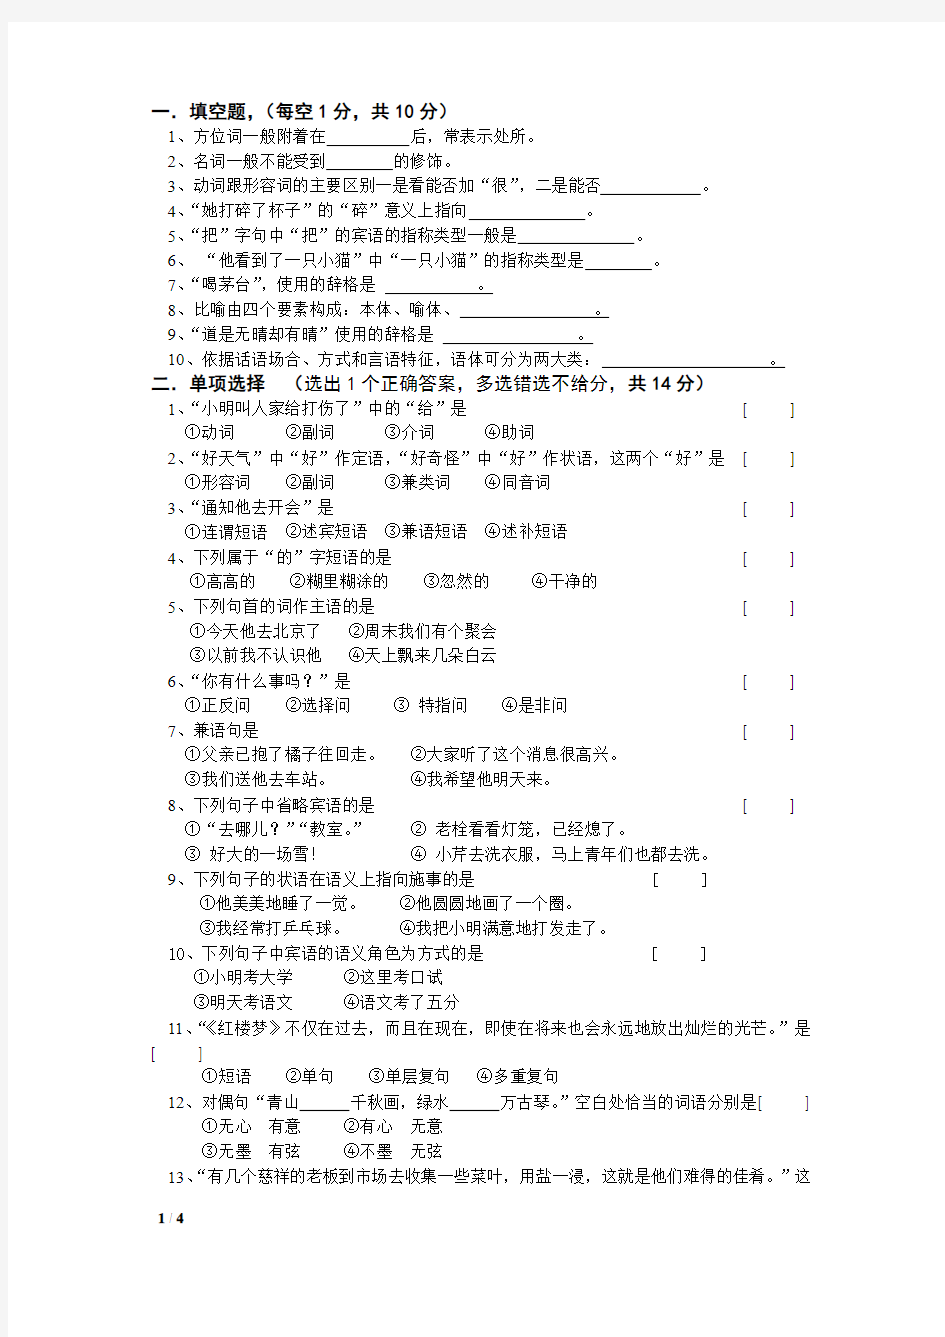 2018年春河北师范大学现代汉语考试题考试卷及答案解析(八)【最新版】